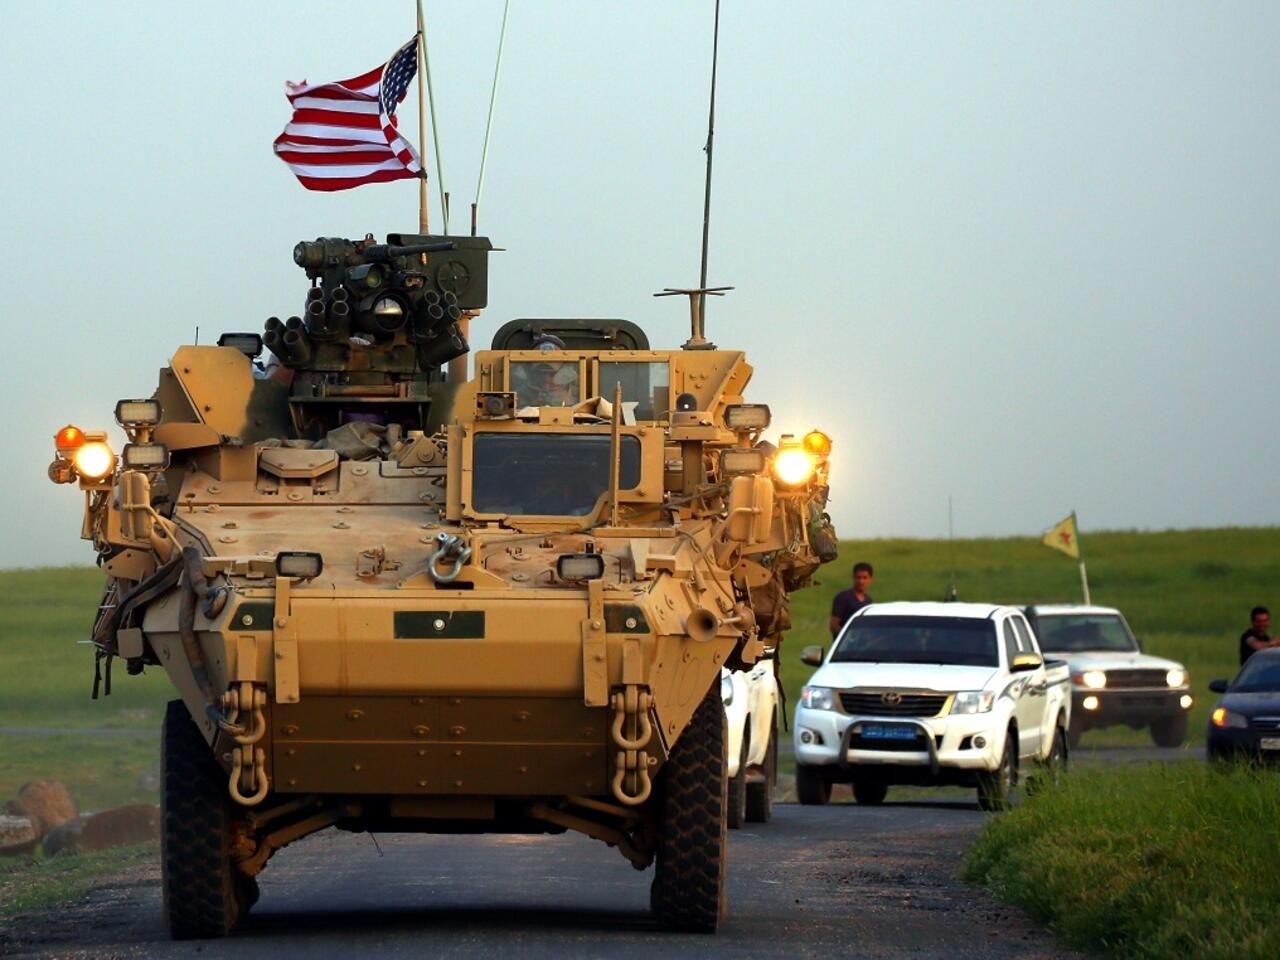 القادة العسكريون الأمريكيون طلبوا من "قوات الصناديد" أن يتحركوا بالتنسيق مع "جيش سوريا الحرة" في منطقة التنف